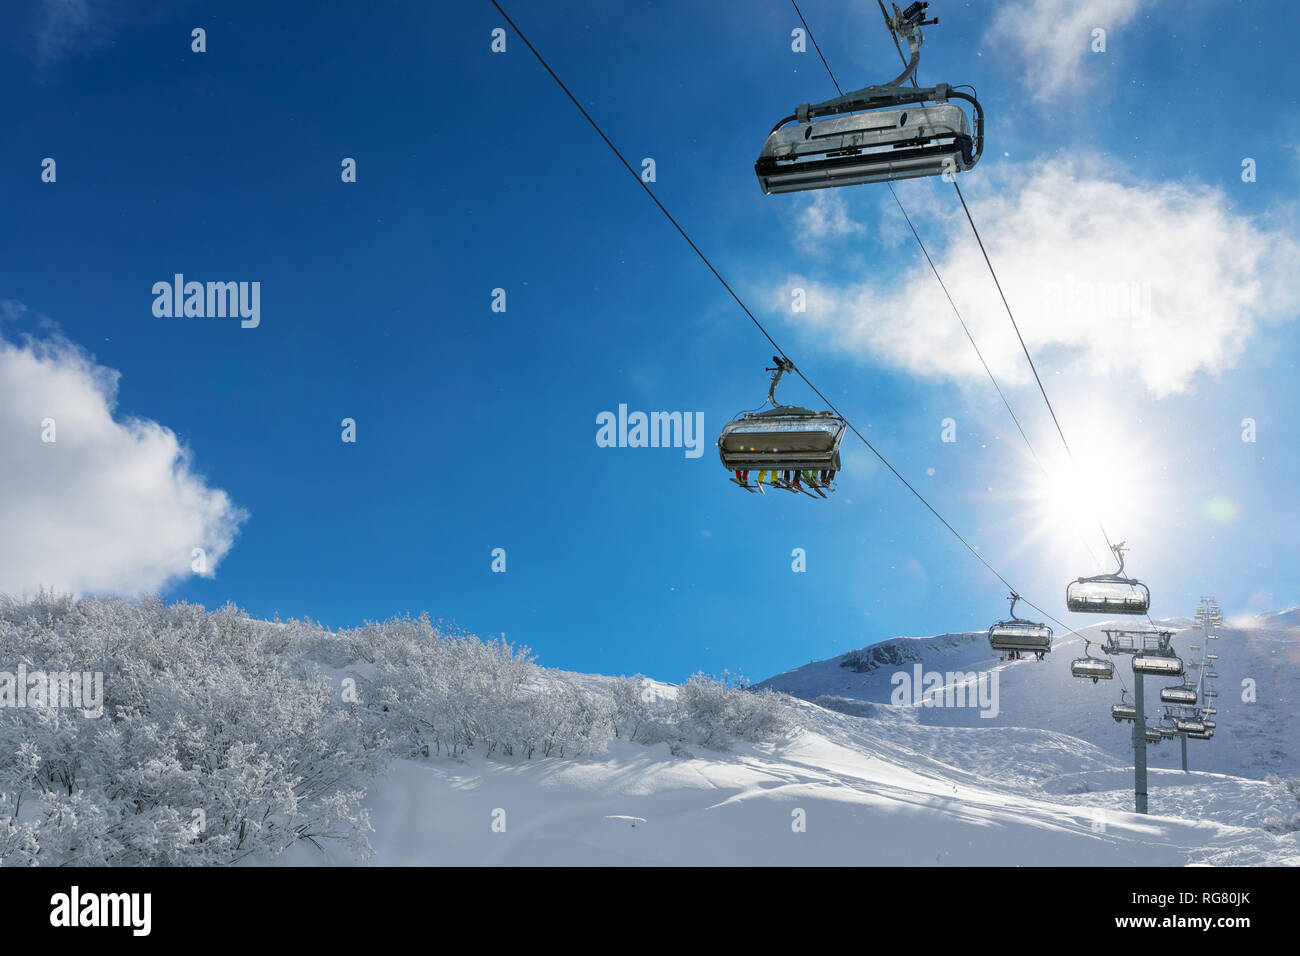 Skifahrer in einem Skilift in Snowy Mountains gegen den blauen sonnigen Himmel Stockfoto